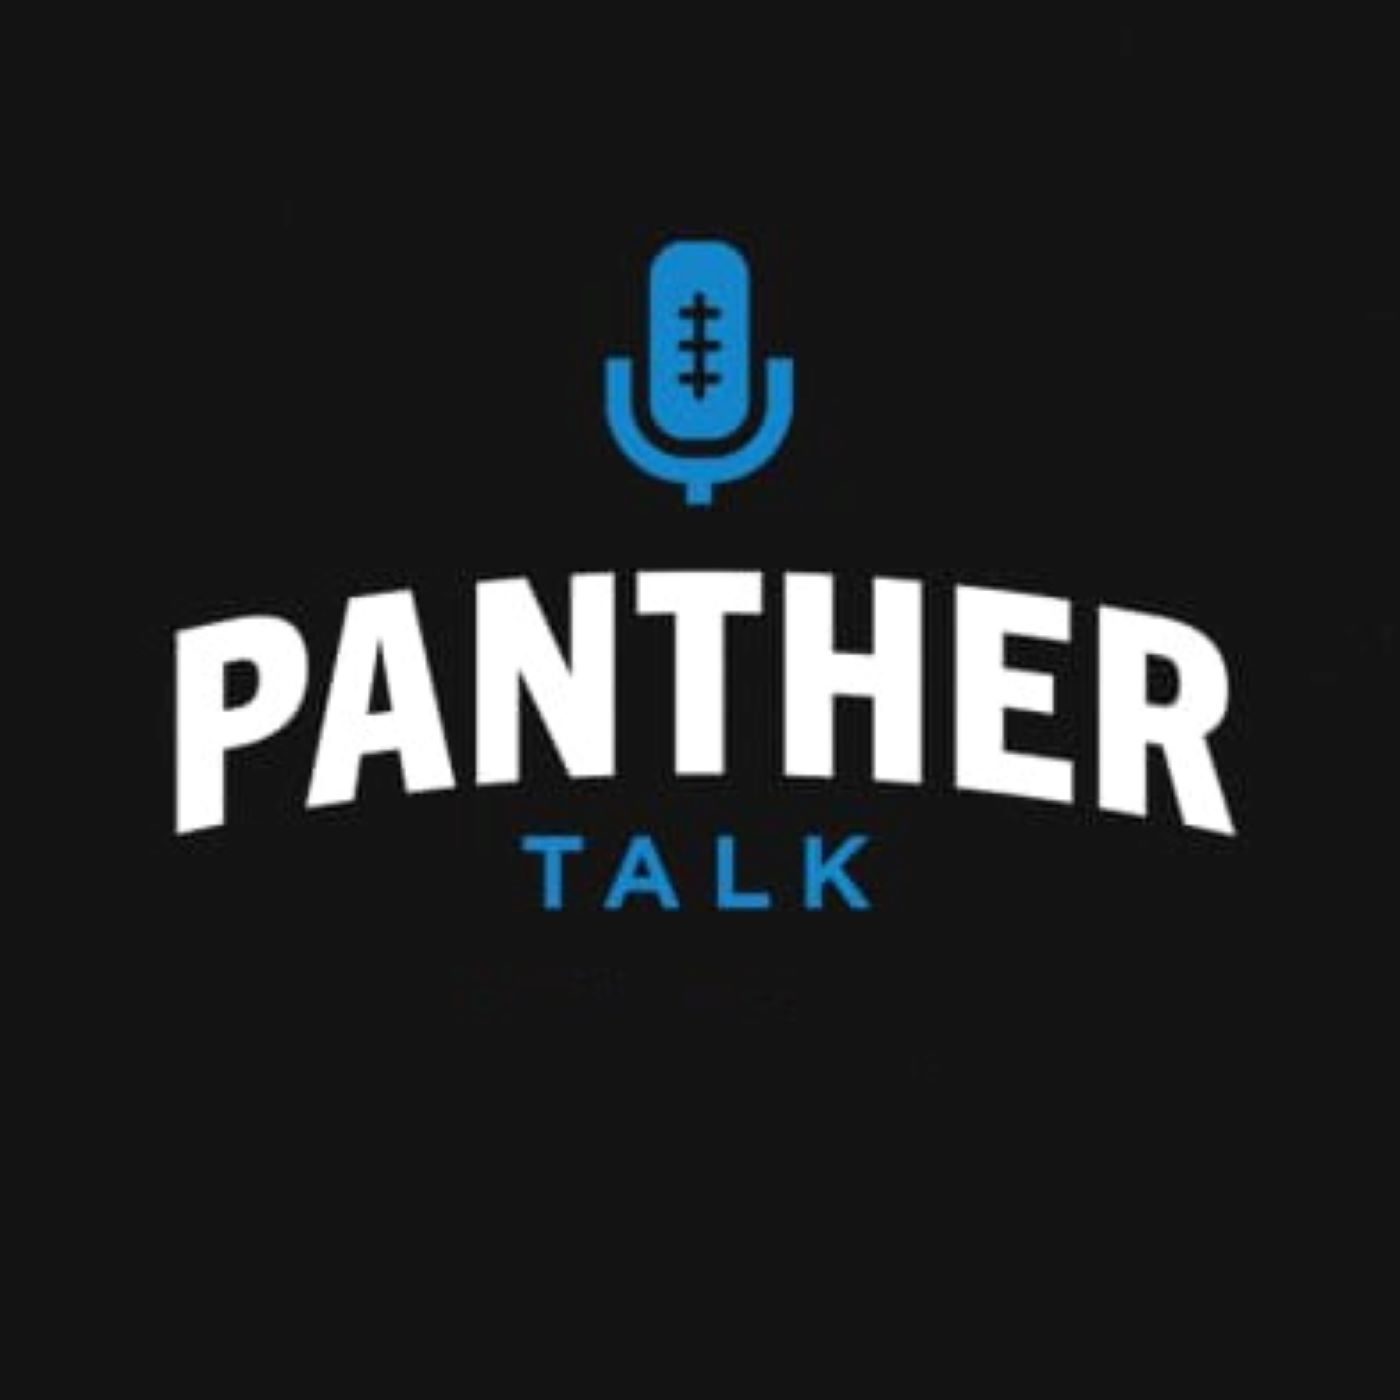 Panther Talk (October 30)